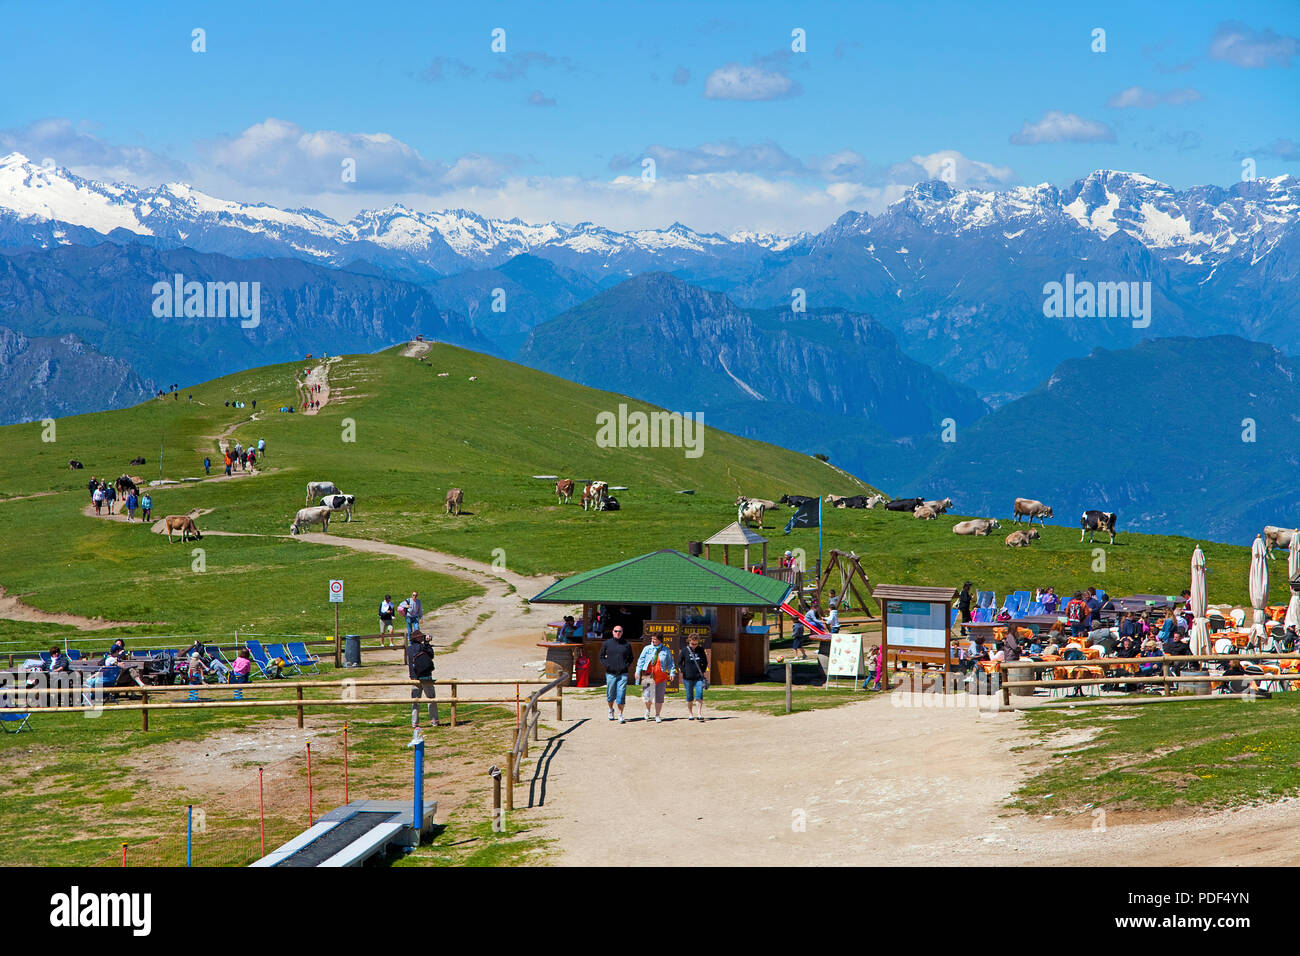 Touristen bei einer Alm auf dem Monte Baldo, Trail point Colma Di Malcesine, Malcesine, Gardasee, Provinz Verona, Lombardei, Italien anzeigen Stockfoto